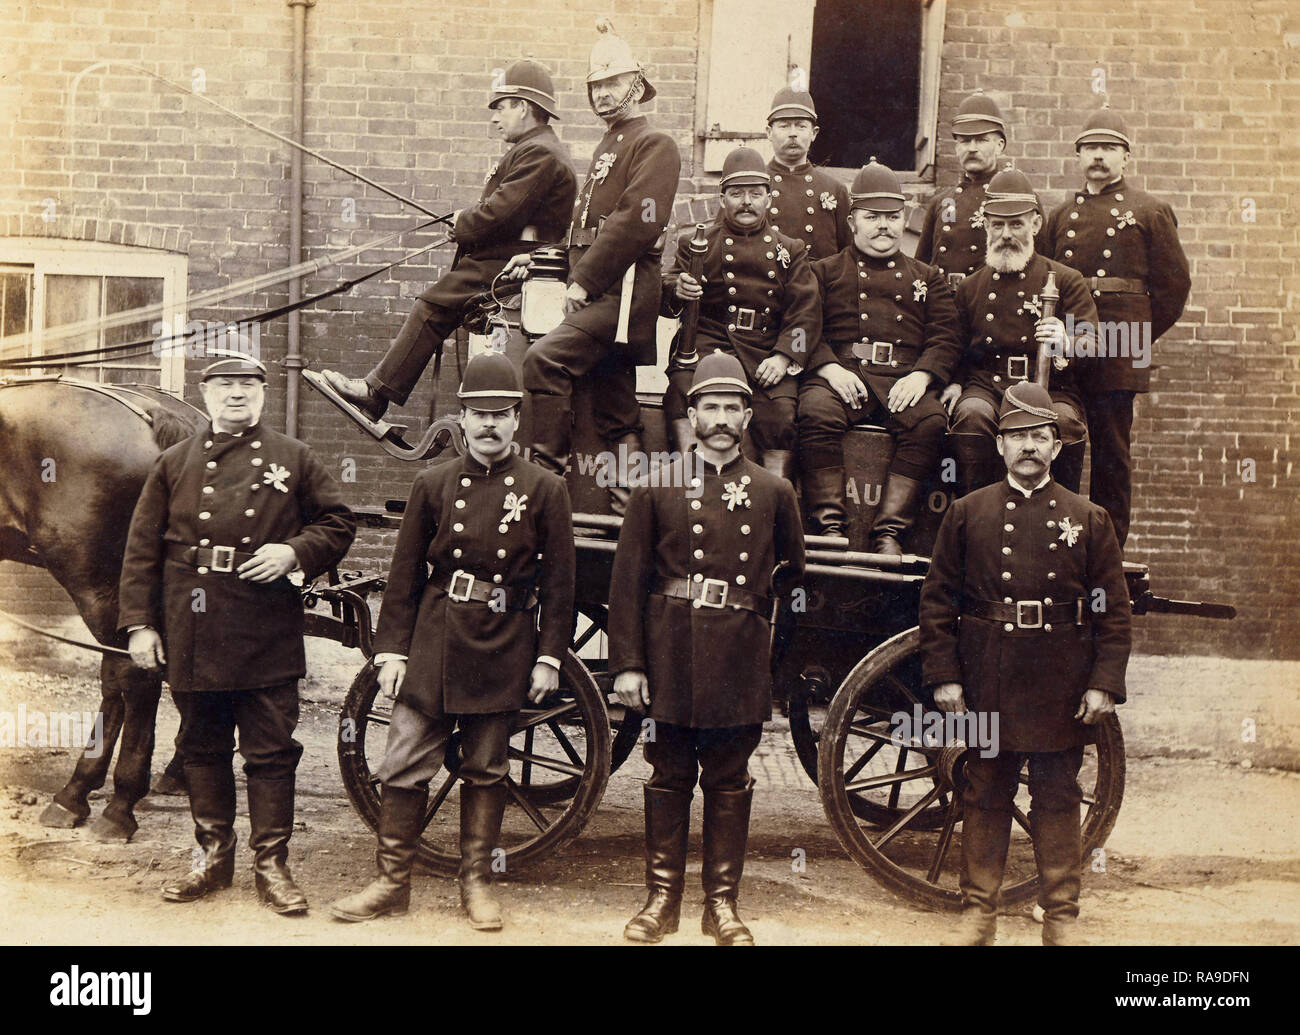 Historisches Archiv Bild von Feuerwehrleuten mit Pferdekutschen Feuer gerät. Feuerwehr. c1900 Stockfoto